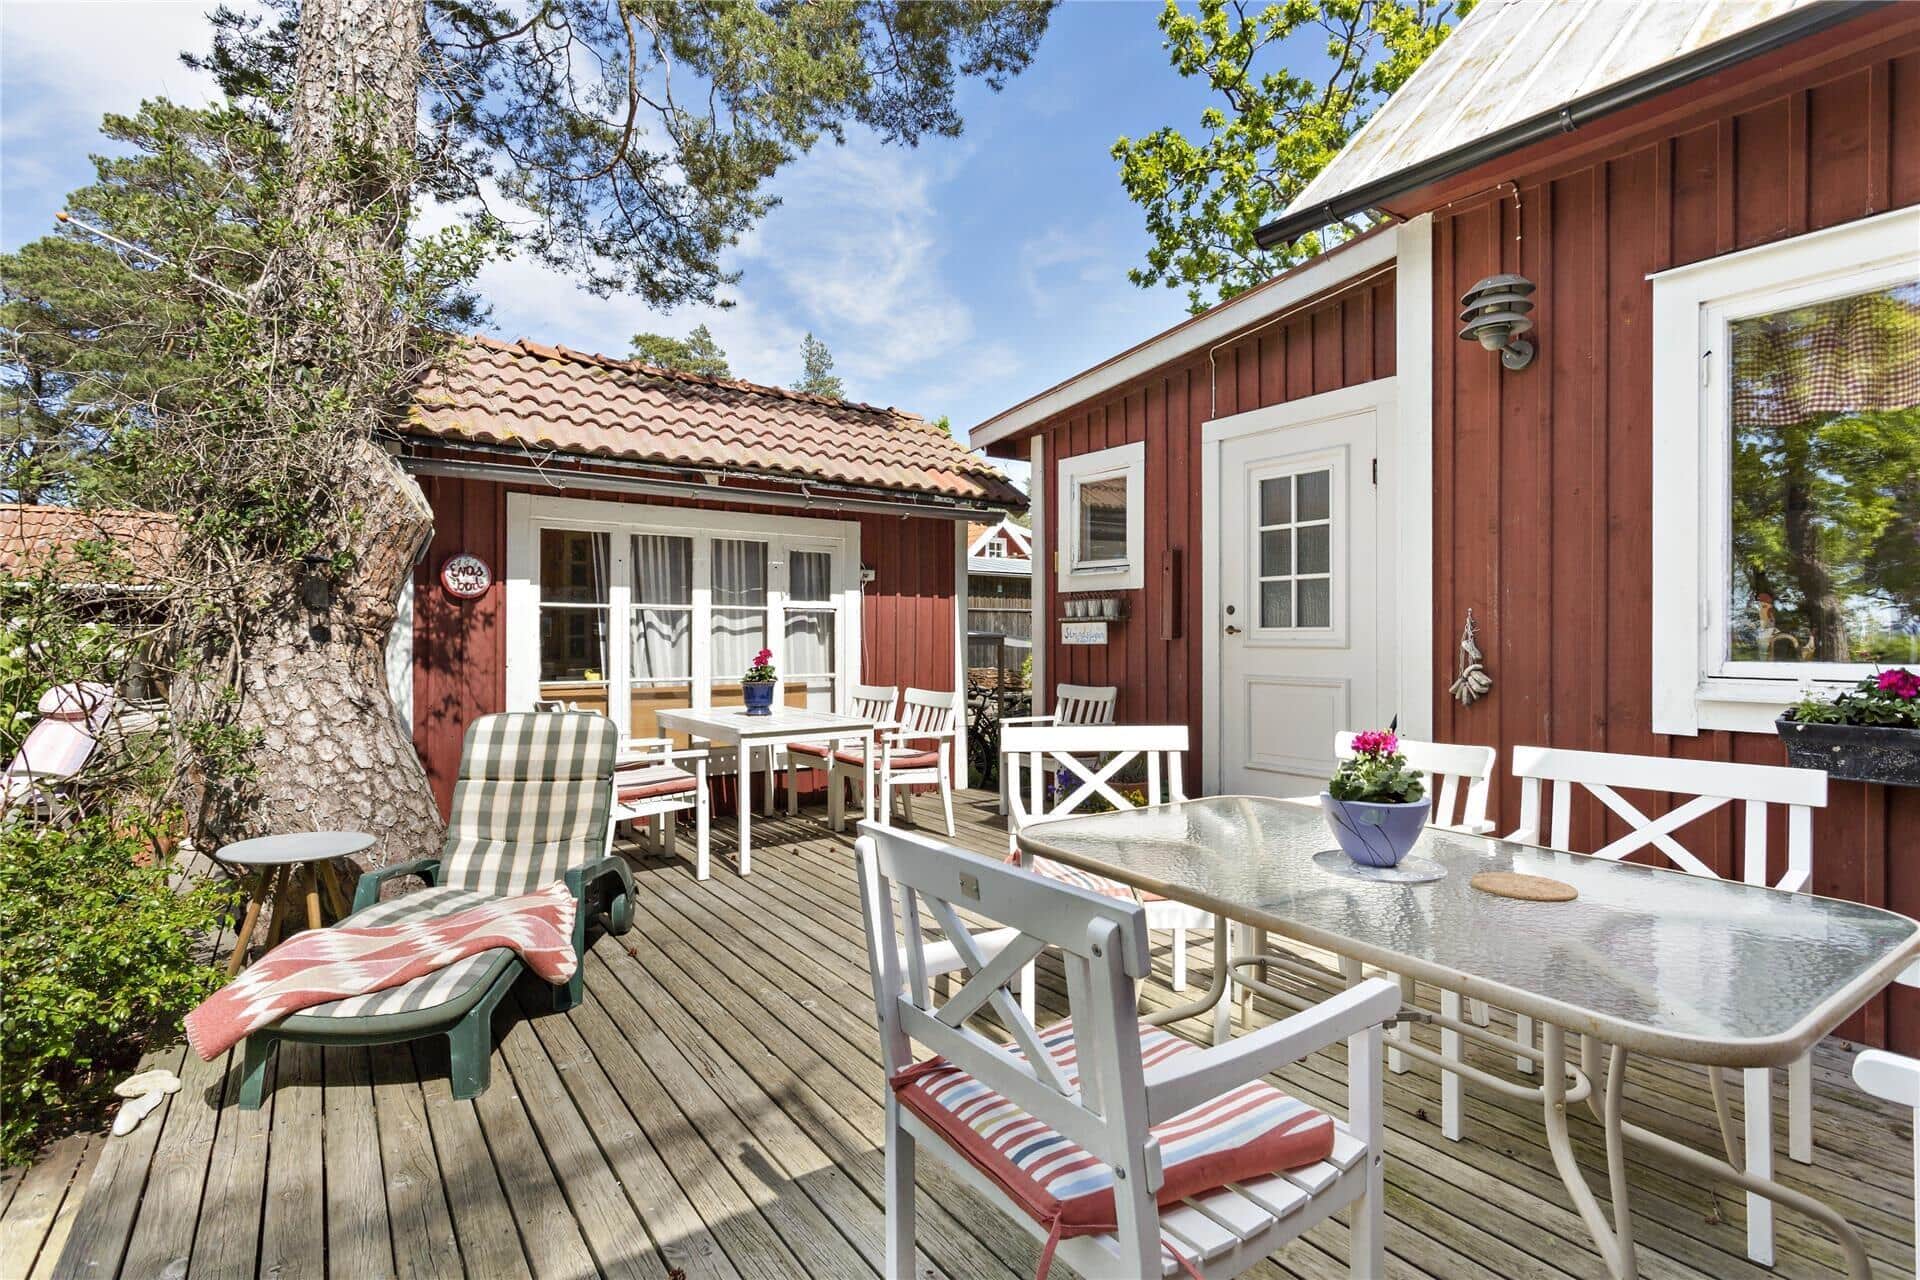 Image 2-171 Holiday-home OLA016, Byrum Sandvik , DK - 380 74 Löttorp